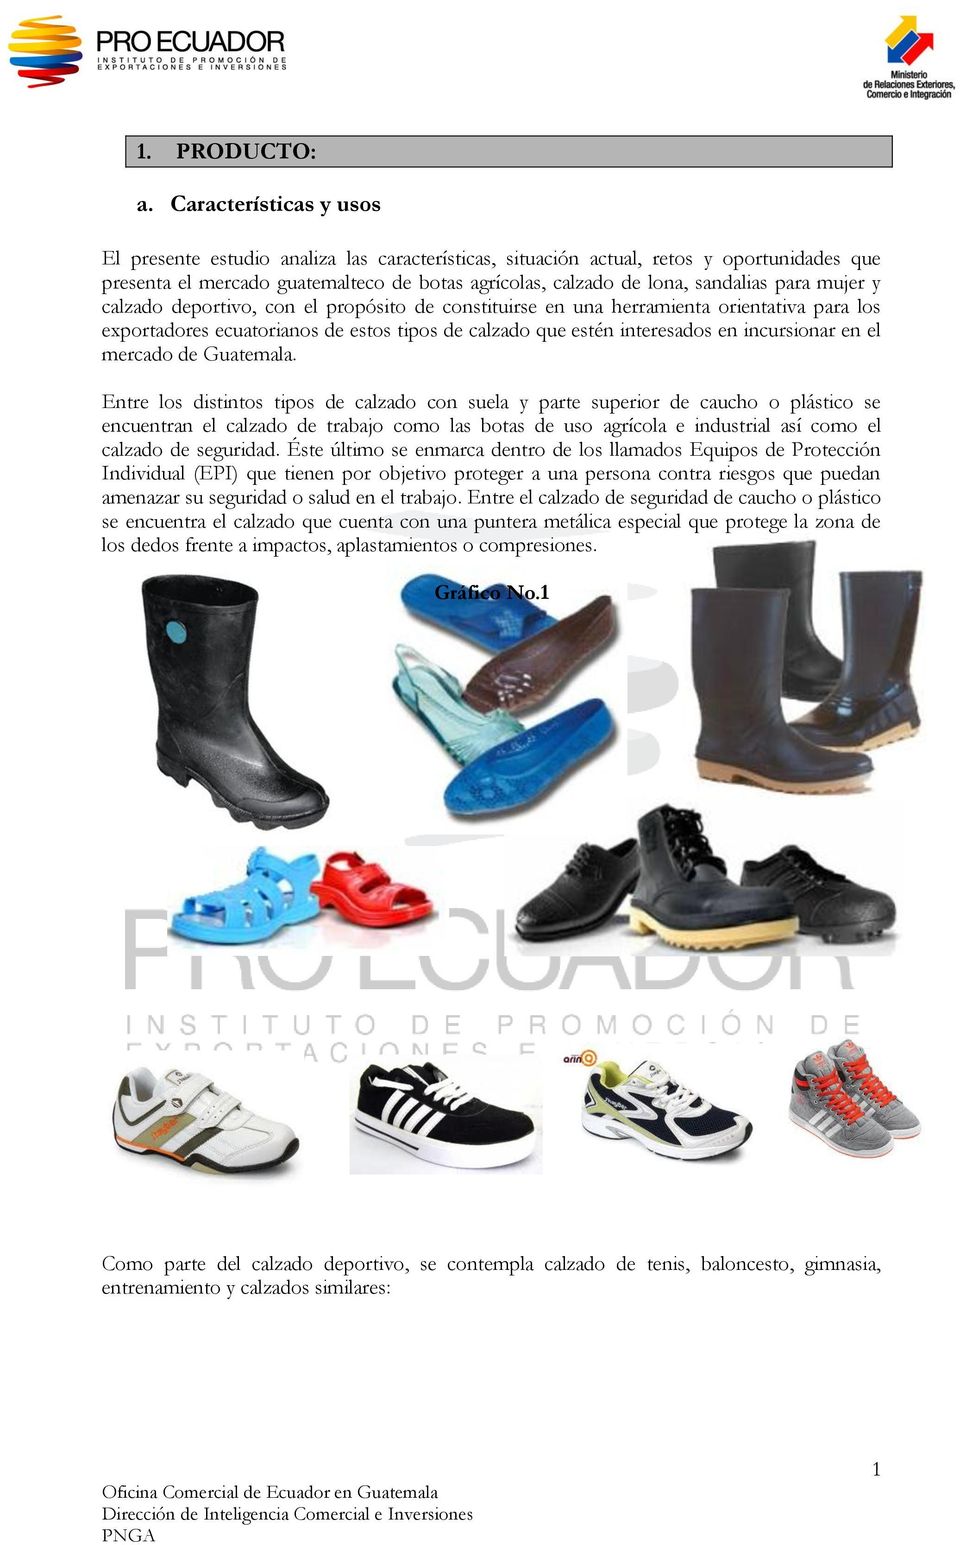 para mujer y calzado deportivo, con el propósito de constituirse en una herramienta orientativa para los exportadores ecuatorianos de estos tipos de calzado que estén interesados en incursionar en el